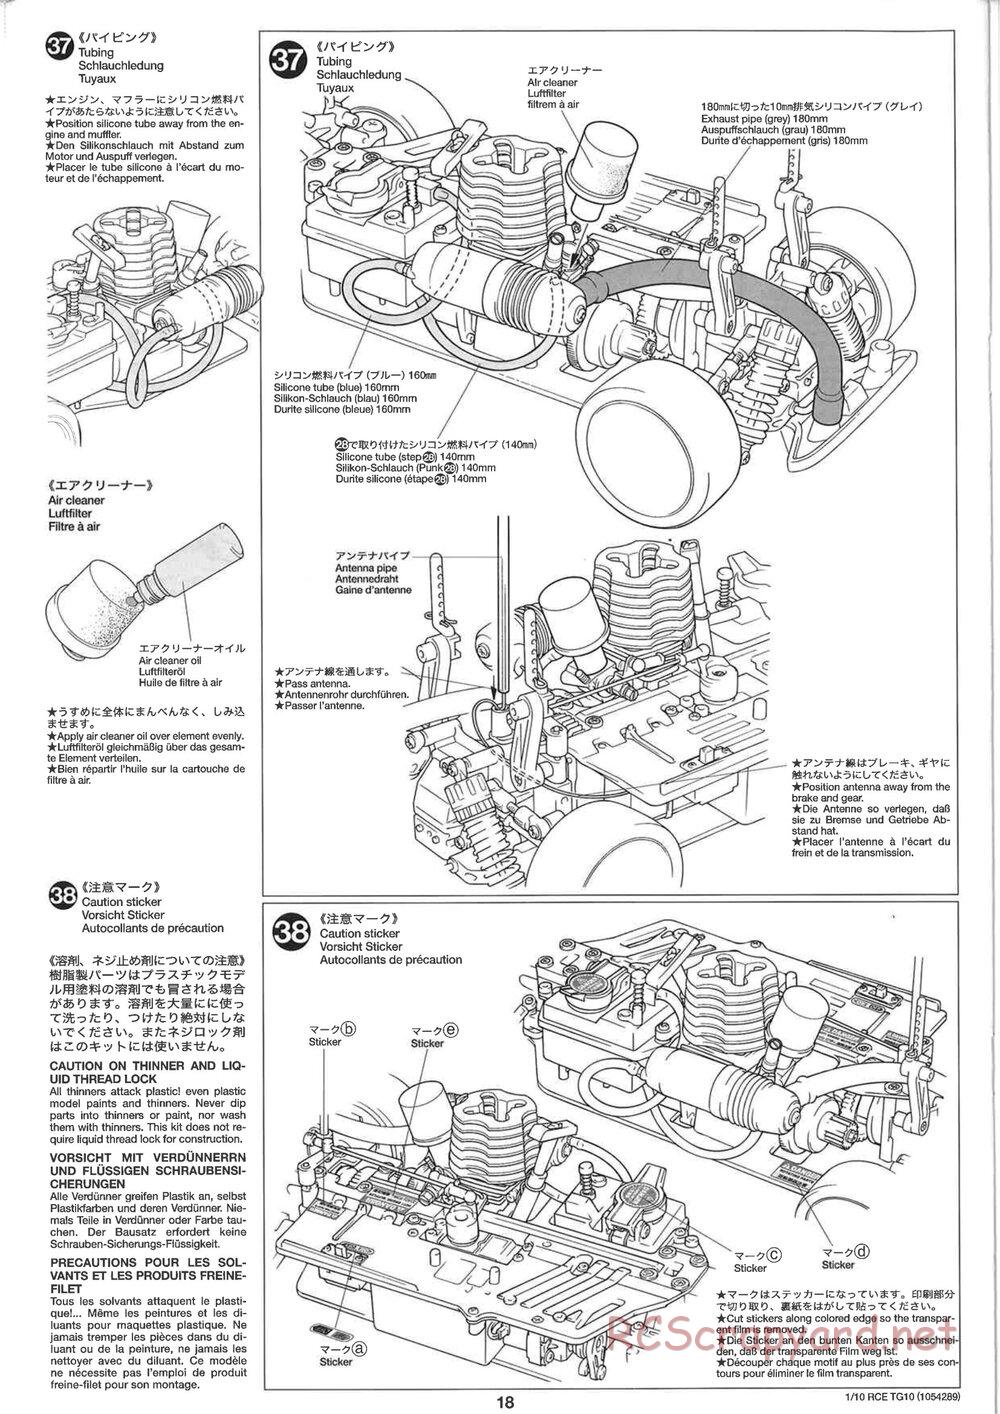 Tamiya - TG10 Mk.1 Chassis - Manual - Page 18